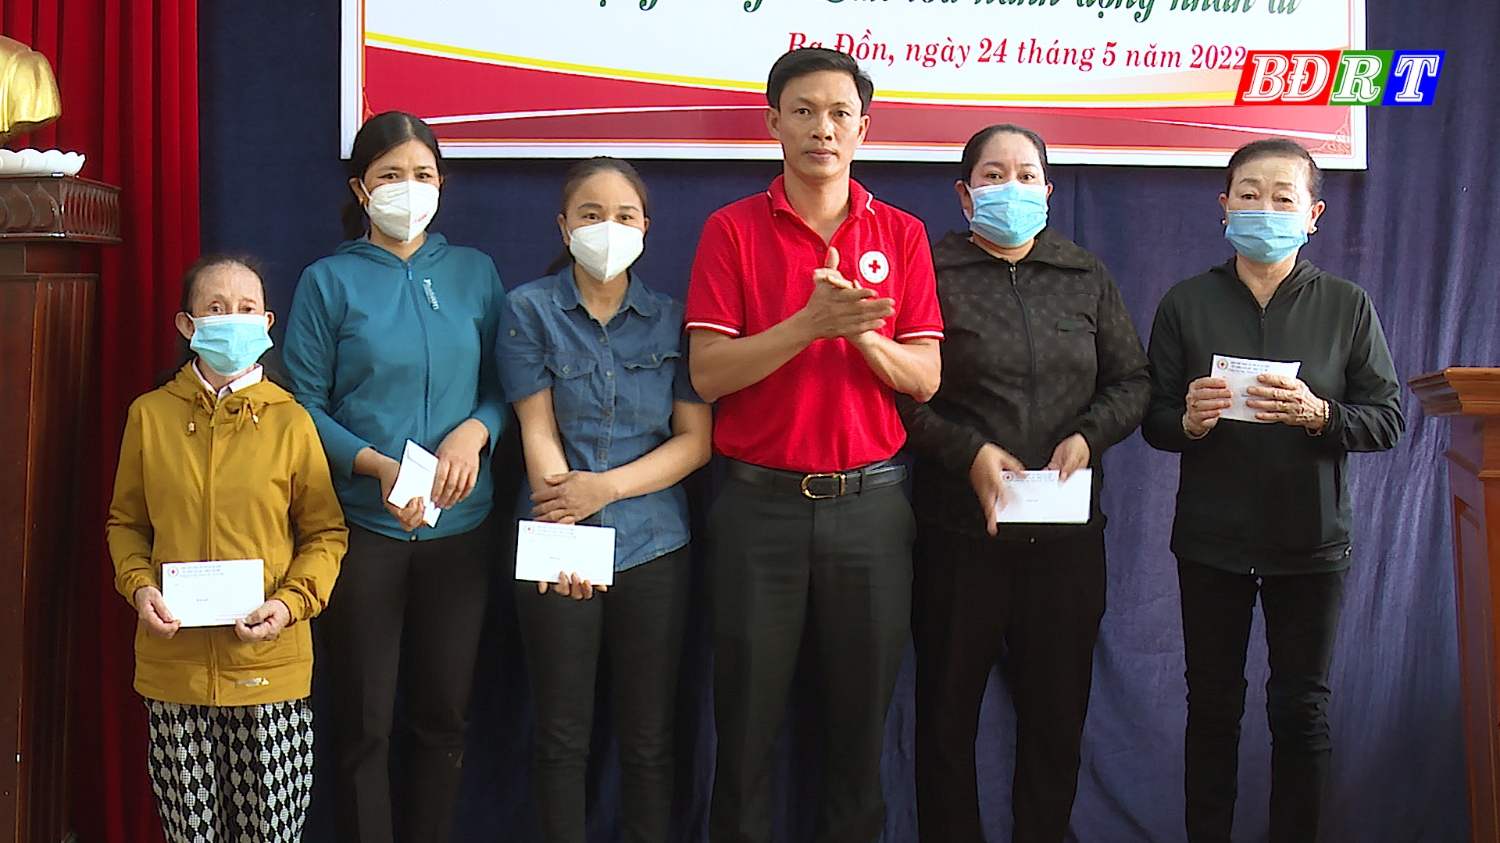 Hội CTĐ thị xã Ba Đồn trao tiền hỗ trợ cho các hộ gia đình gặp hoàn cảnh khó khăn trong cuộc sống